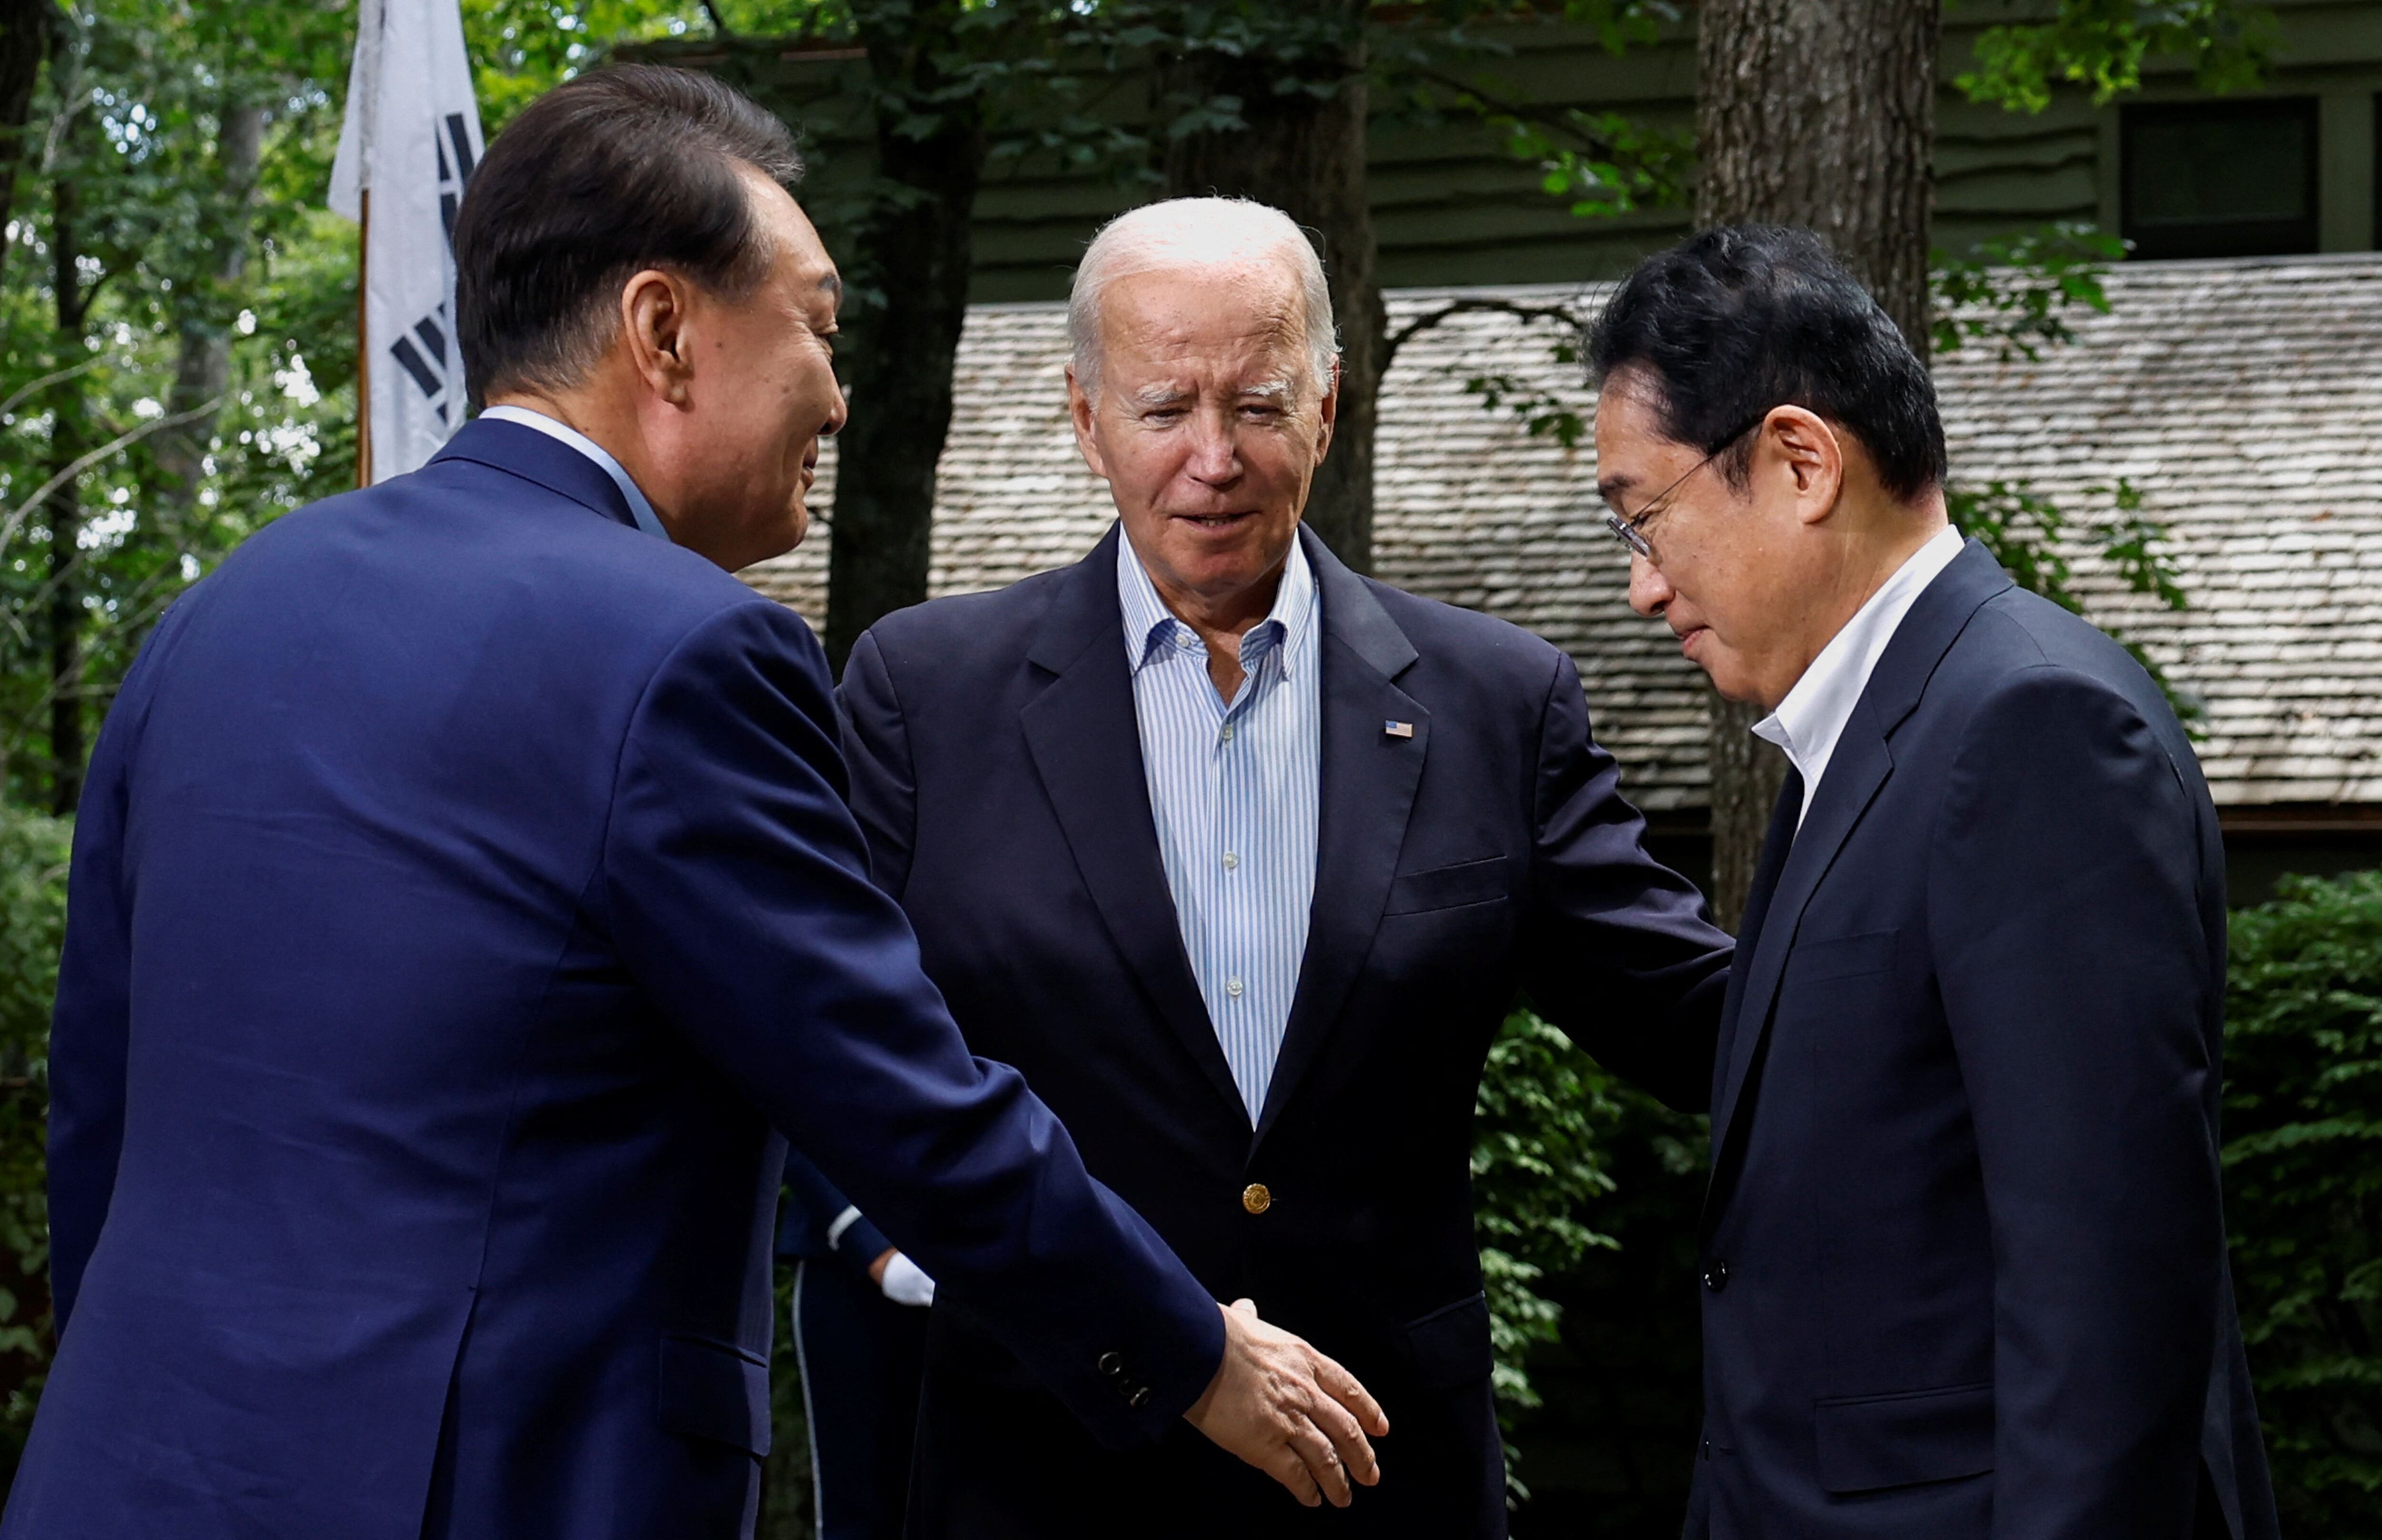 El presidente estadounidense Joe Biden saluda al primer ministro japonés Fumio Kishida y al presidente surcoreano Yoon Suk Yeol durante la cumbre trilateral en Camp David cerca de Thurmont, Maryland, EE. UU., 18 de agosto de 2023. REUTERS/Evelyn Hockstein